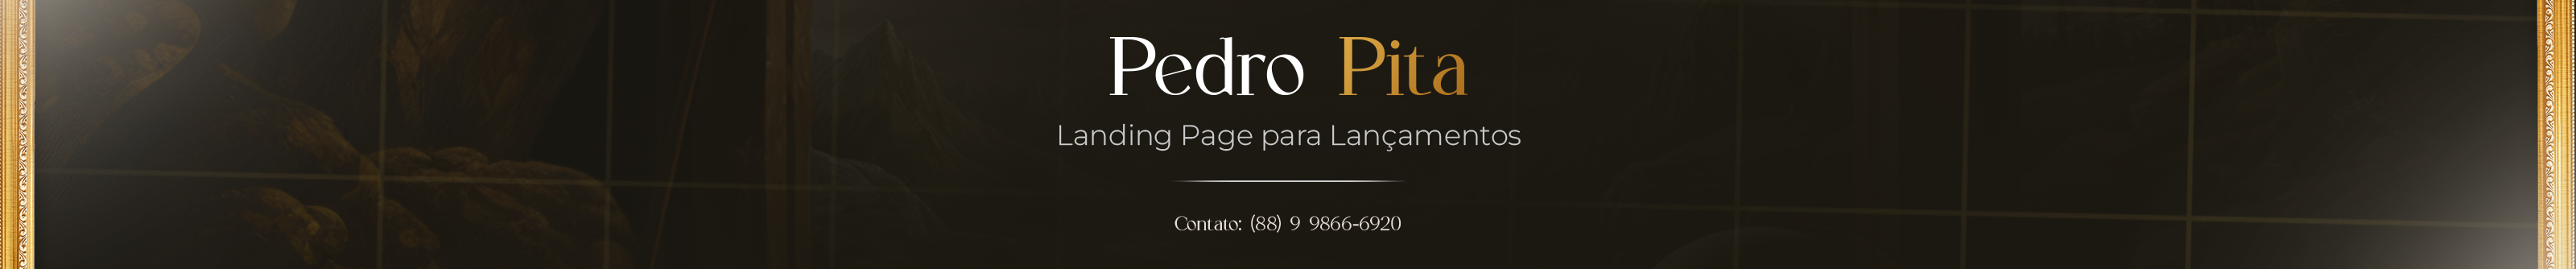 Pedro Pita's profile banner